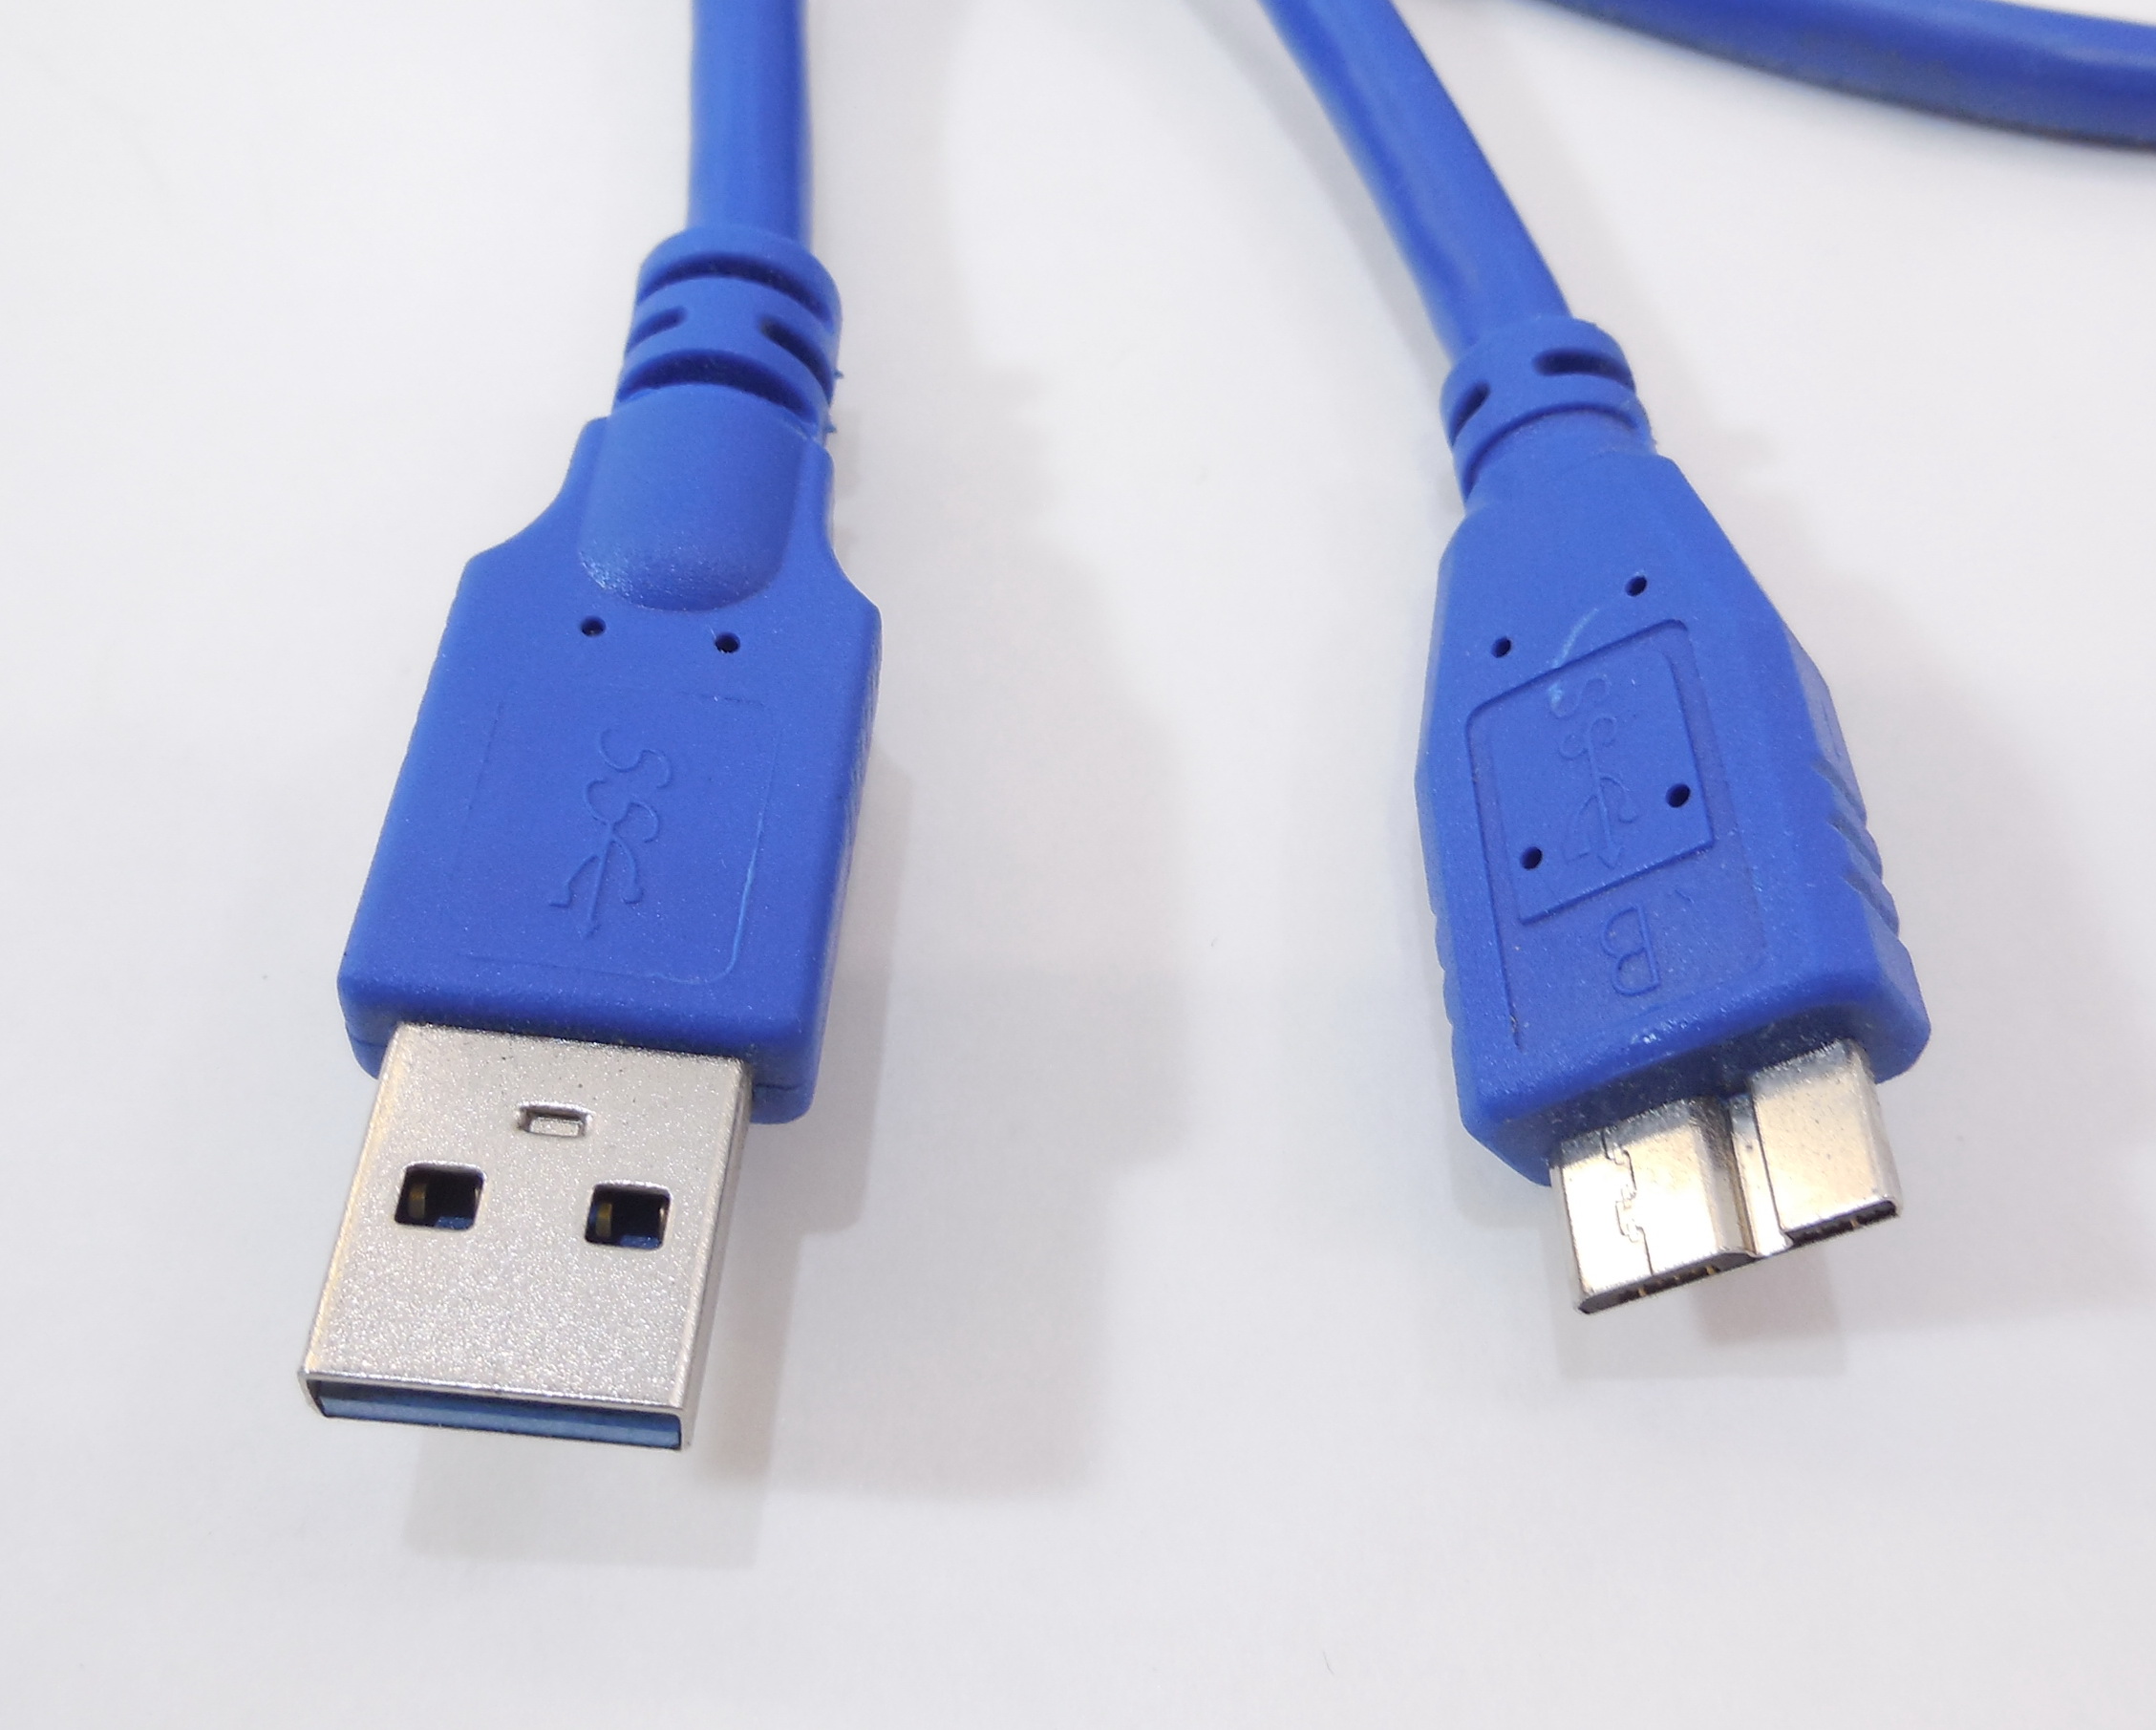 Микро usb 3. Кабель Micro USB 3.0 - USB 3м. USB 3.0 Cable e119932. USB 3.0 TYPEA / Micro USB Type b кабель. Кабель USB 3.0 A-B 3 М.